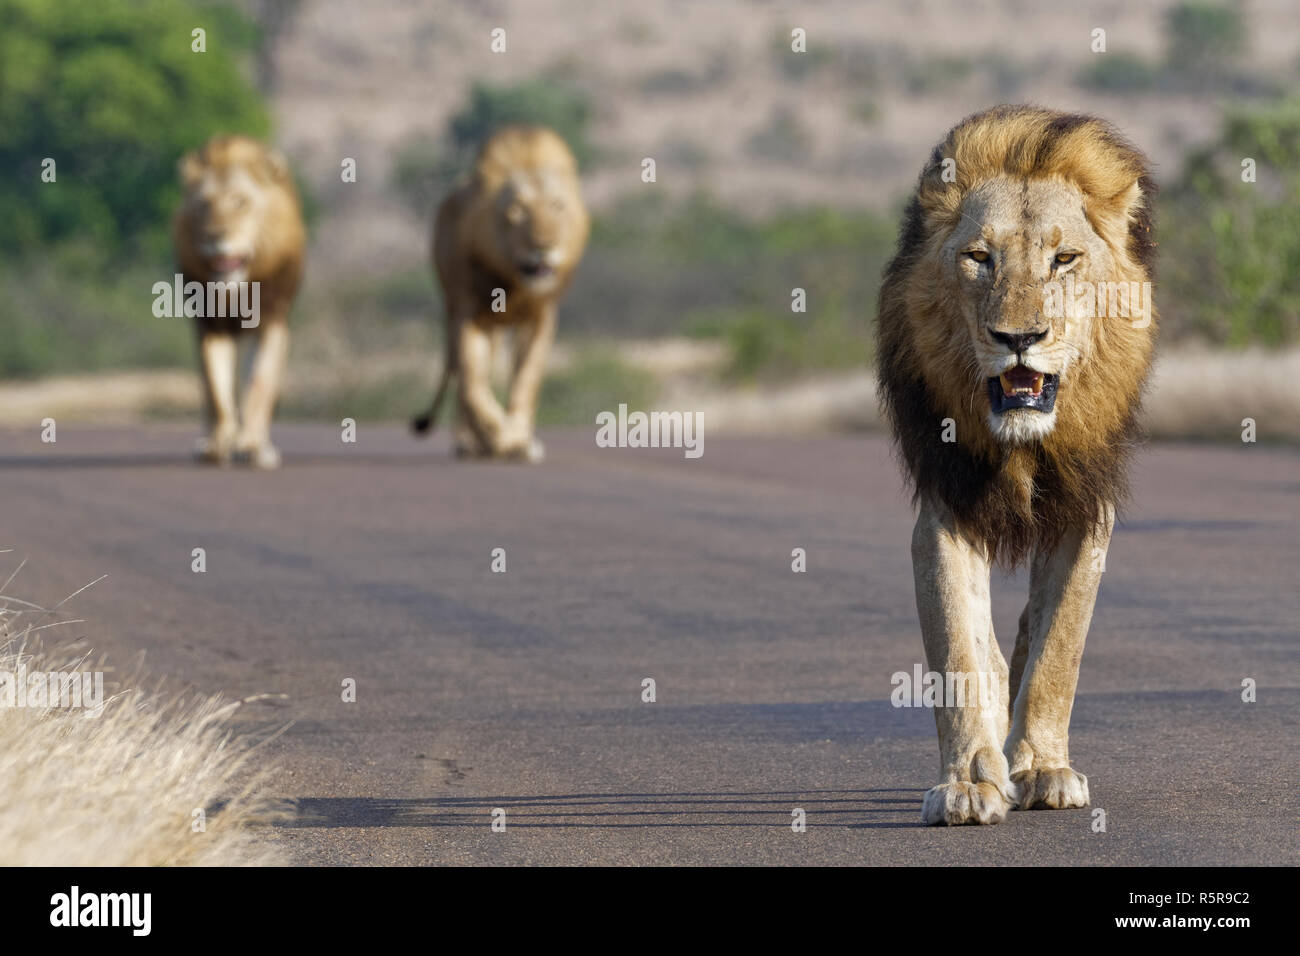 Les lions d'Afrique (Panthera leo), trois hommes marchant sur une route goudronnée, Kruger National Park, Afrique du Sud, l'Afrique Banque D'Images